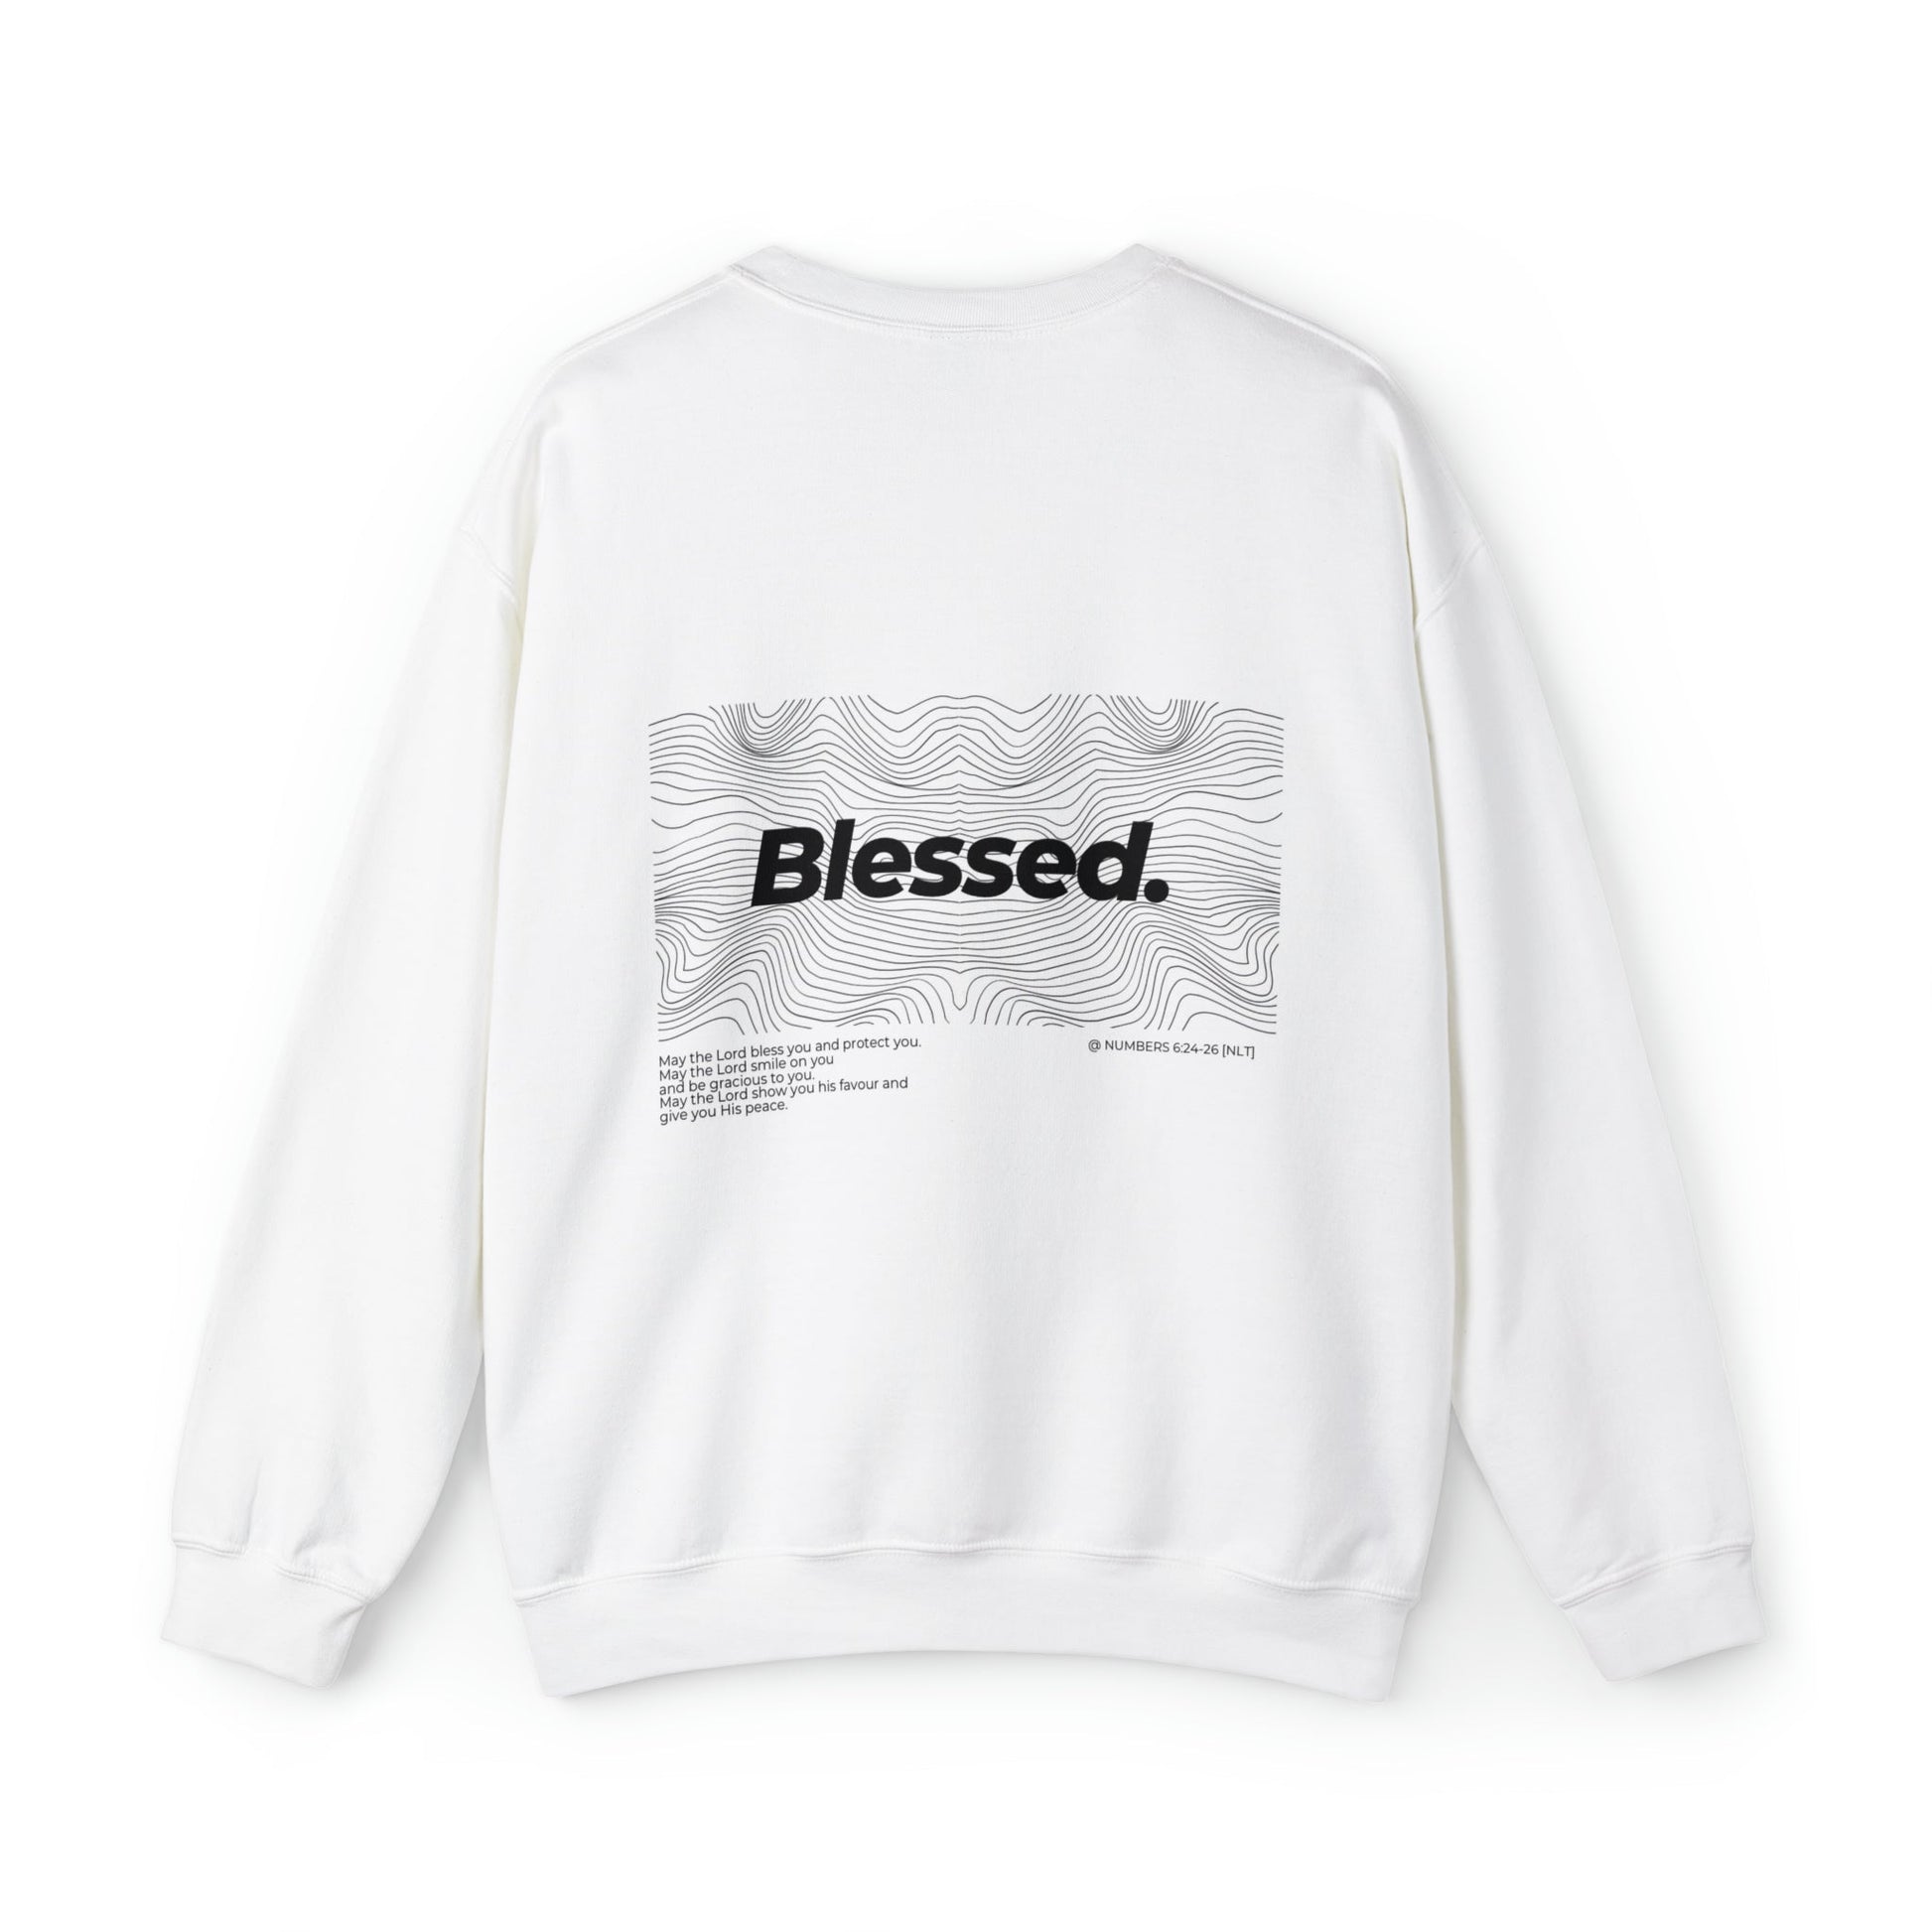 Unisex "BLESSED" Crewneck Sweatshirt - PSALMS34Clothing